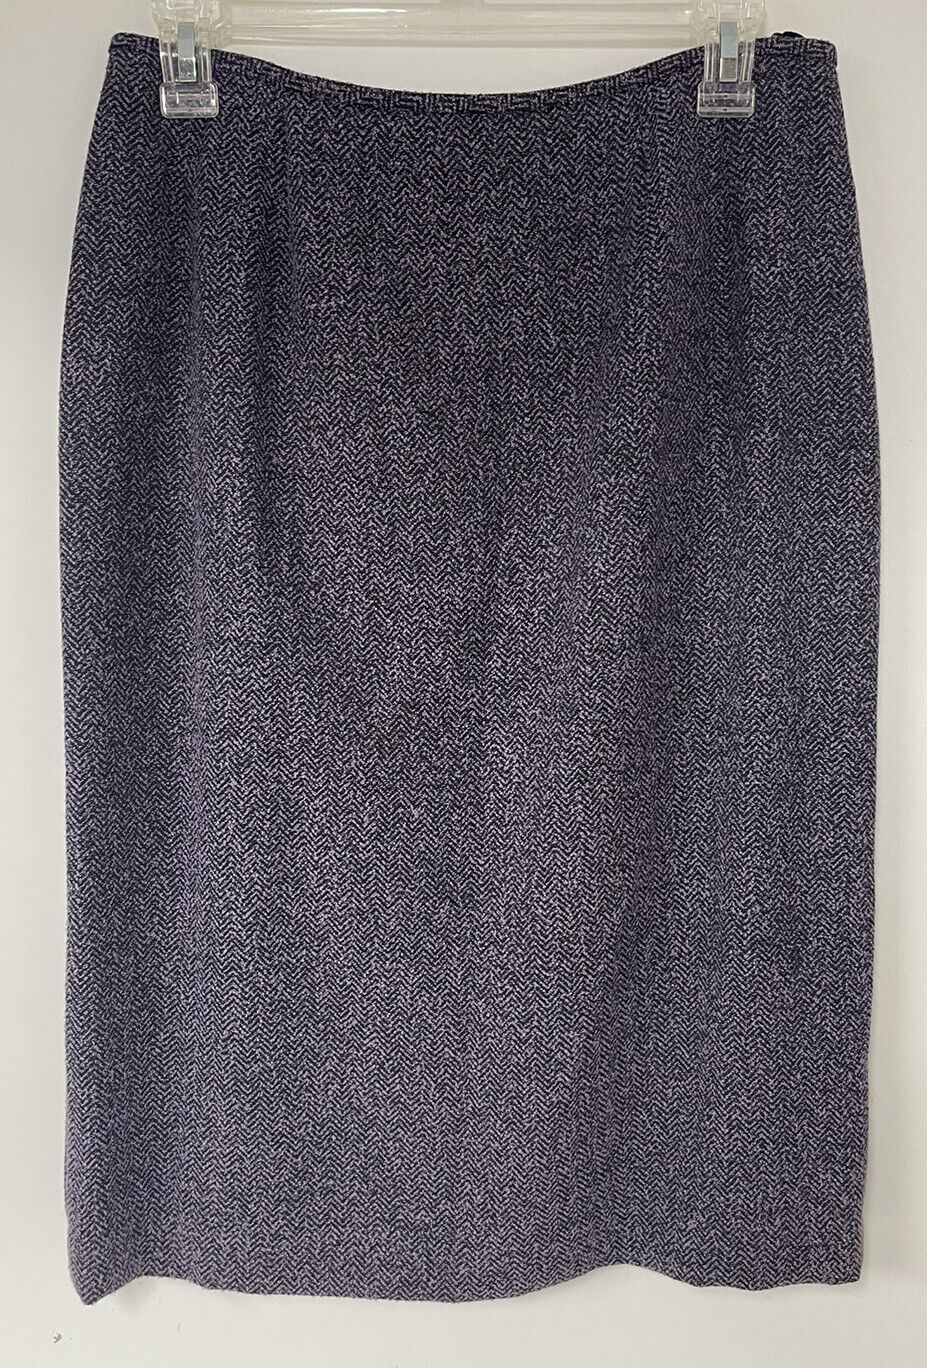 Vintage Le Suit 2-Piece Skirt Suit Womens Size 8 … - image 7